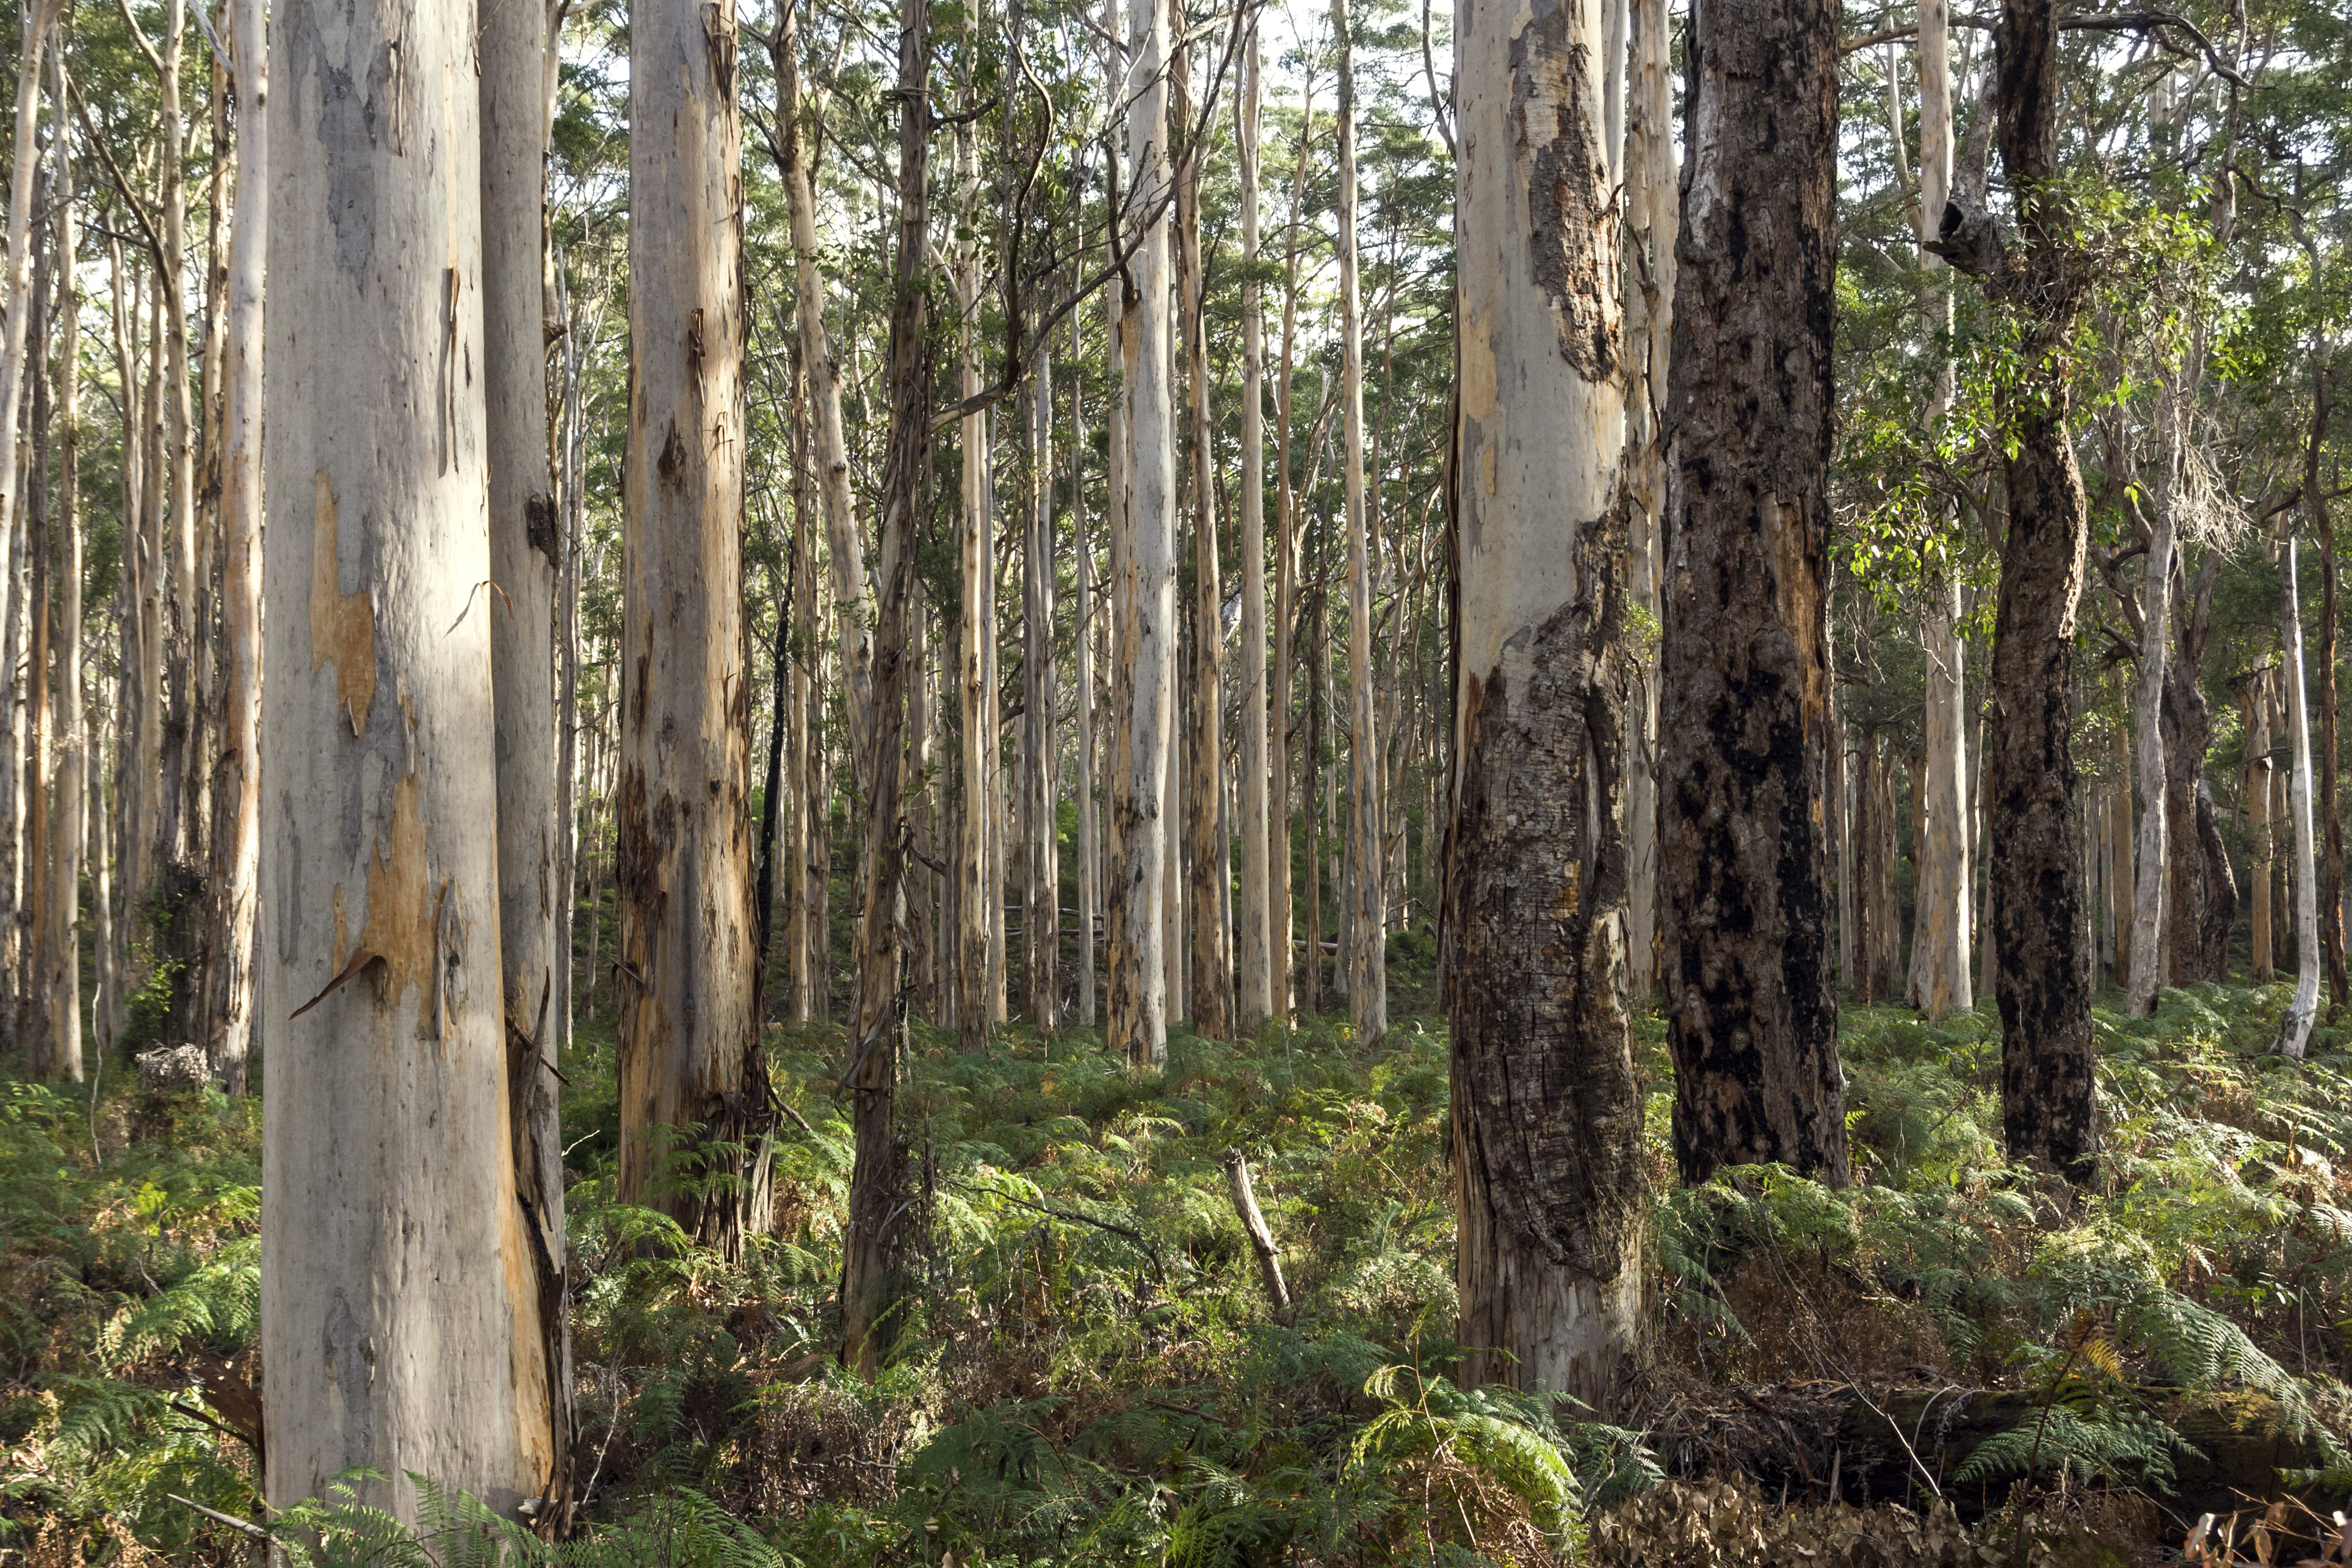 Deforestation-free supply chains